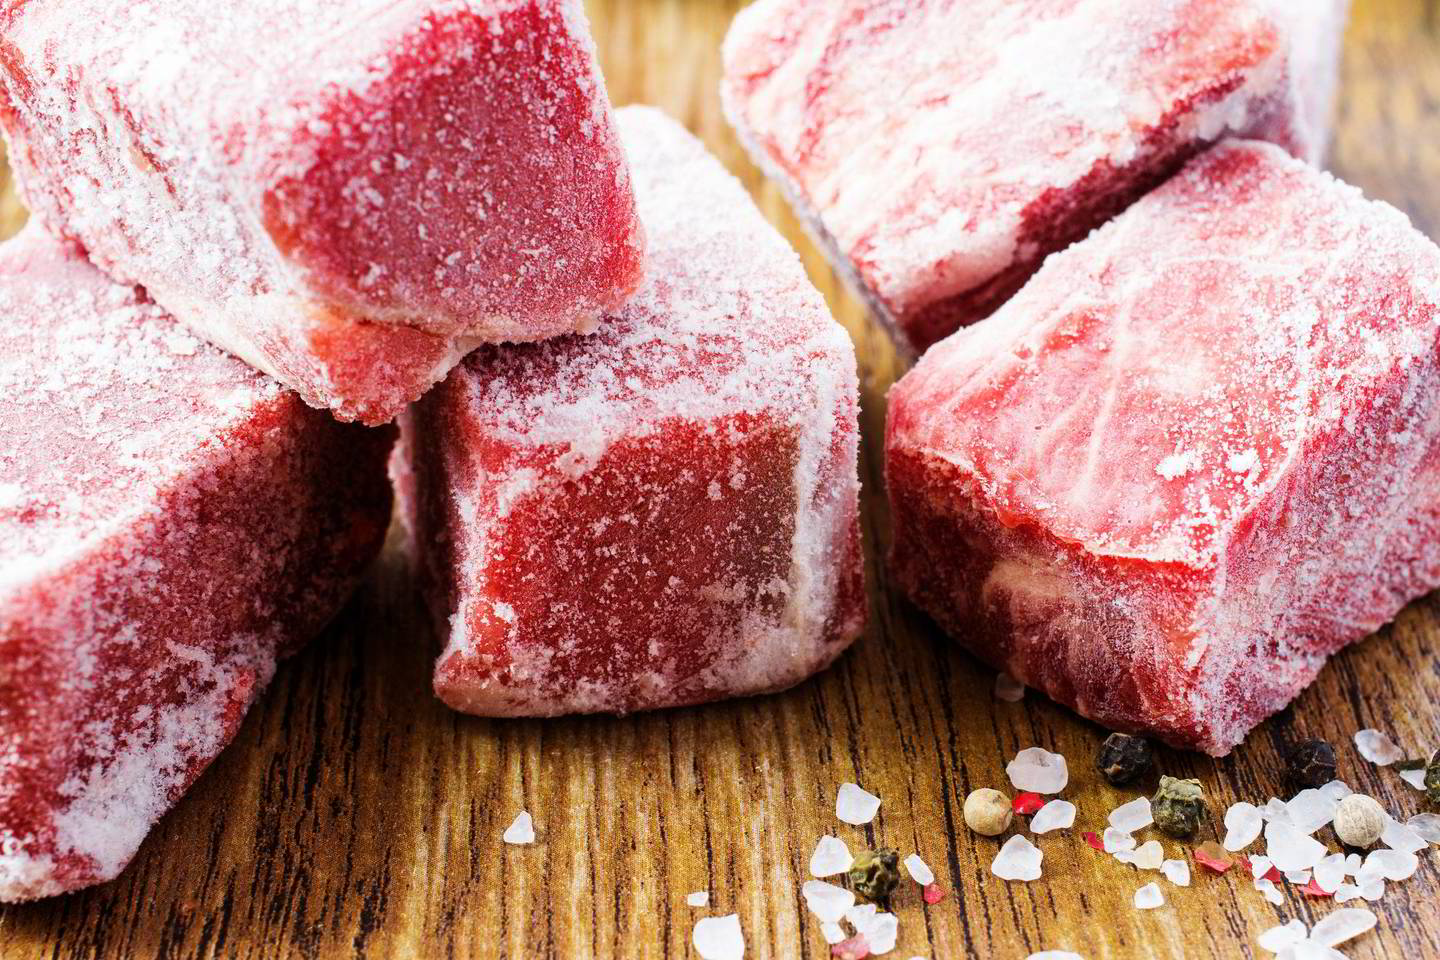 Žema temperatūra slopina mikroorganizmų bei audinių fermentų veiklą, todėl šalčiu konservuota mėsa ilgai išlaiko savo pradines savybes.<br> 123rf.com nuotr.